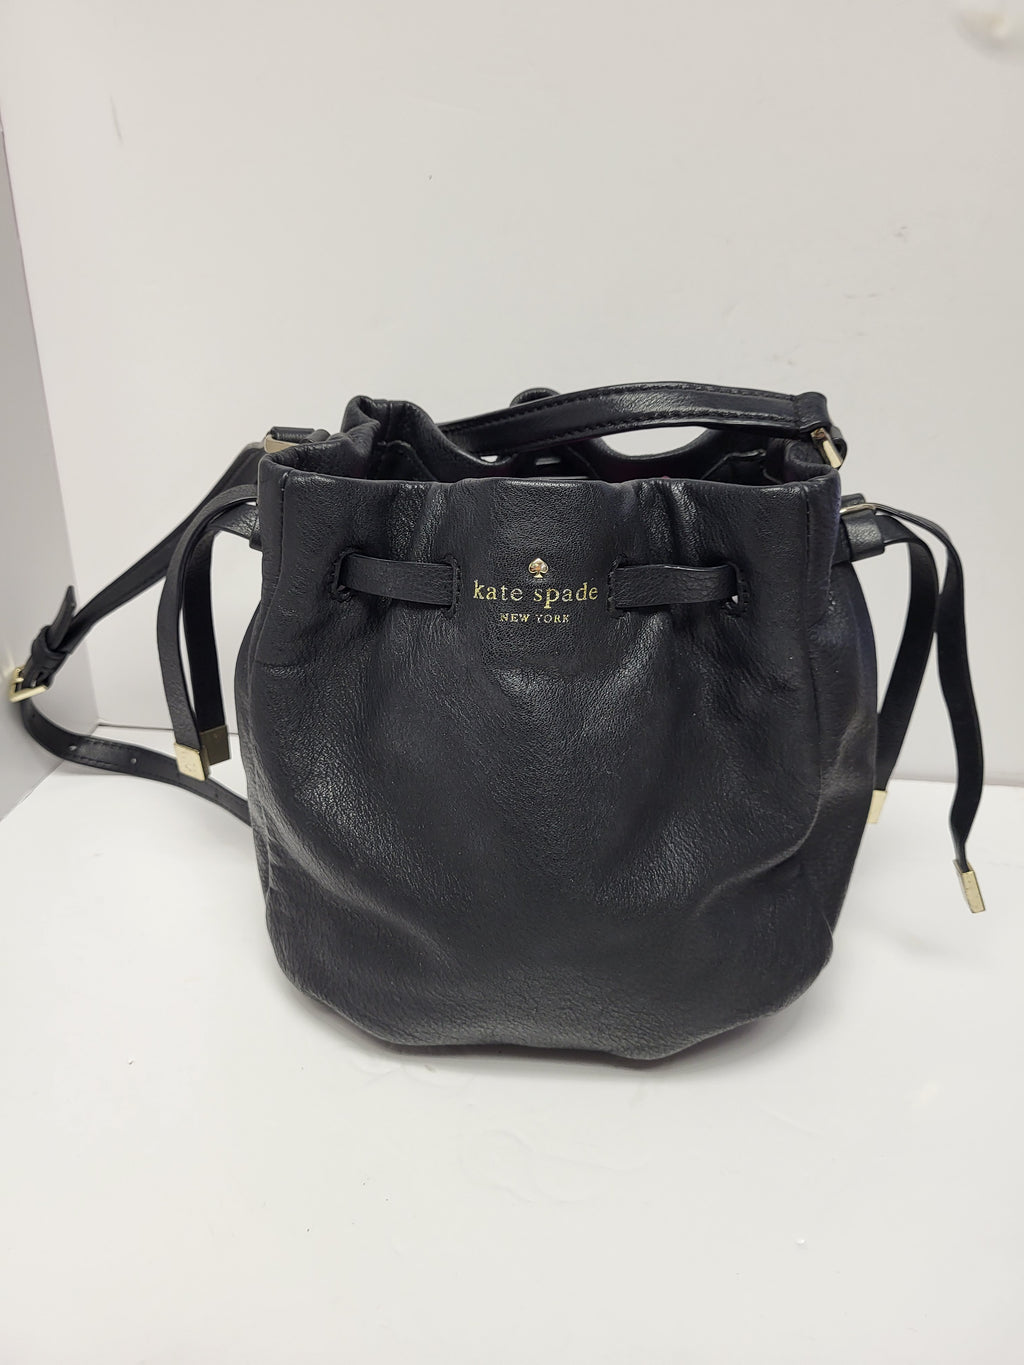 Kate Spade Black Leather Crossbody/Shoulder Bag